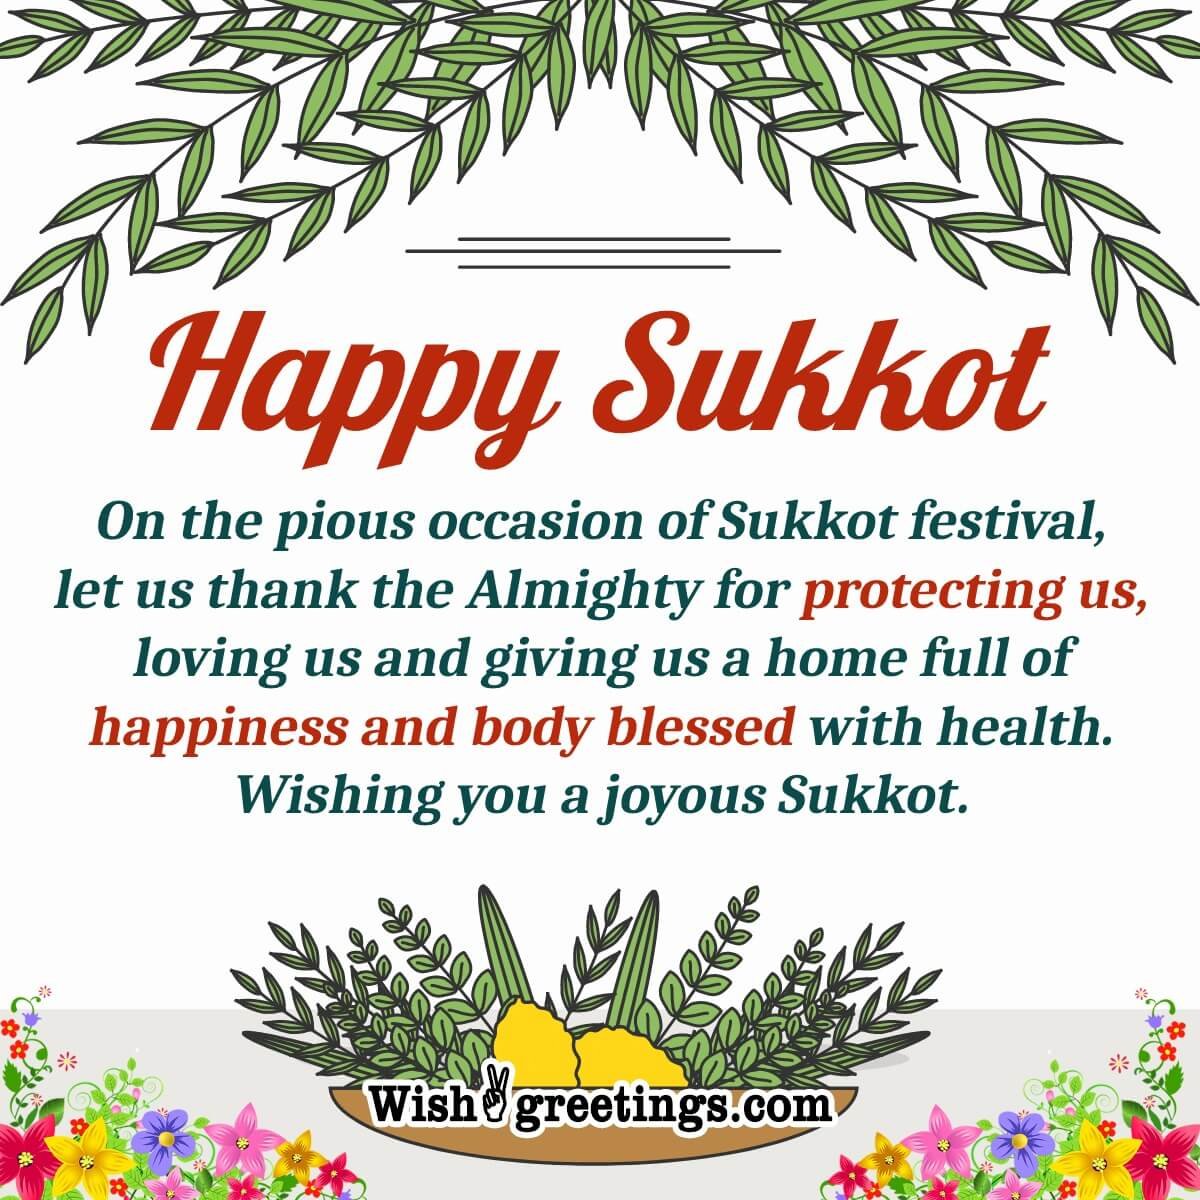 Wishing Joyous Sukkot